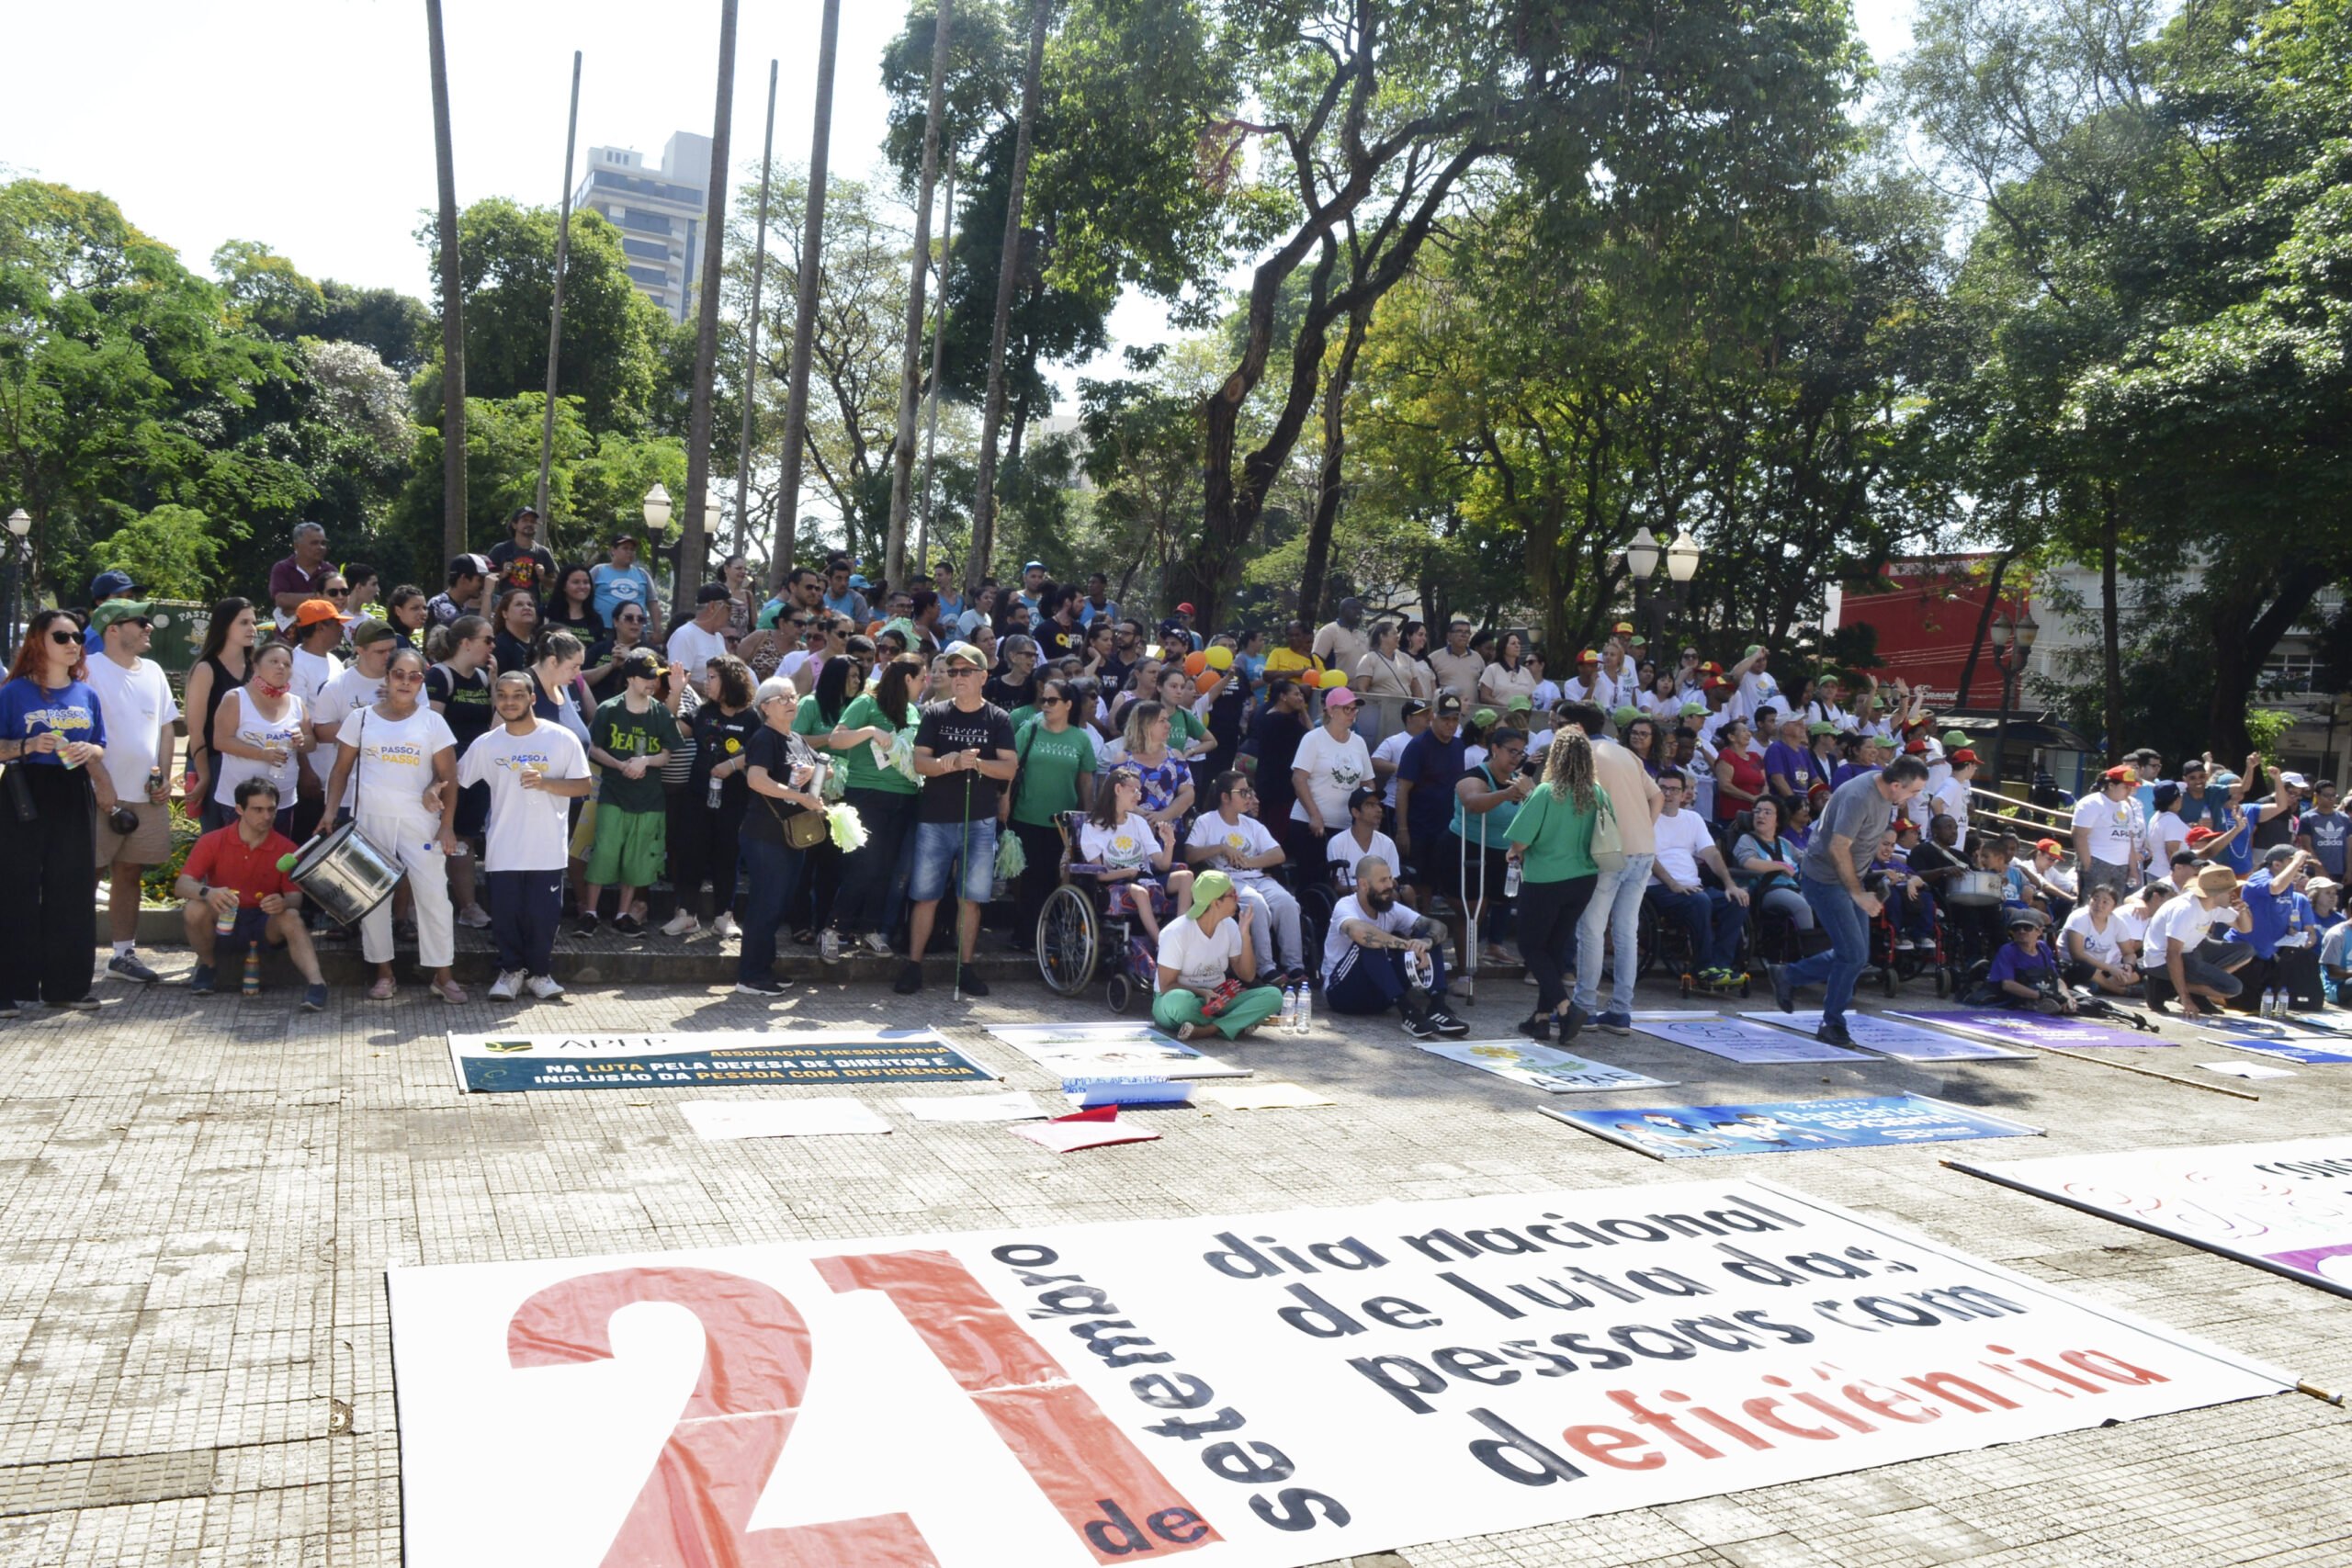 Ao fundo da imagem, participantes da caminhada da inclusão em pé atrás da faixa 21 de setembro - Dia Nacional de luta da Pessoa com Deficiência